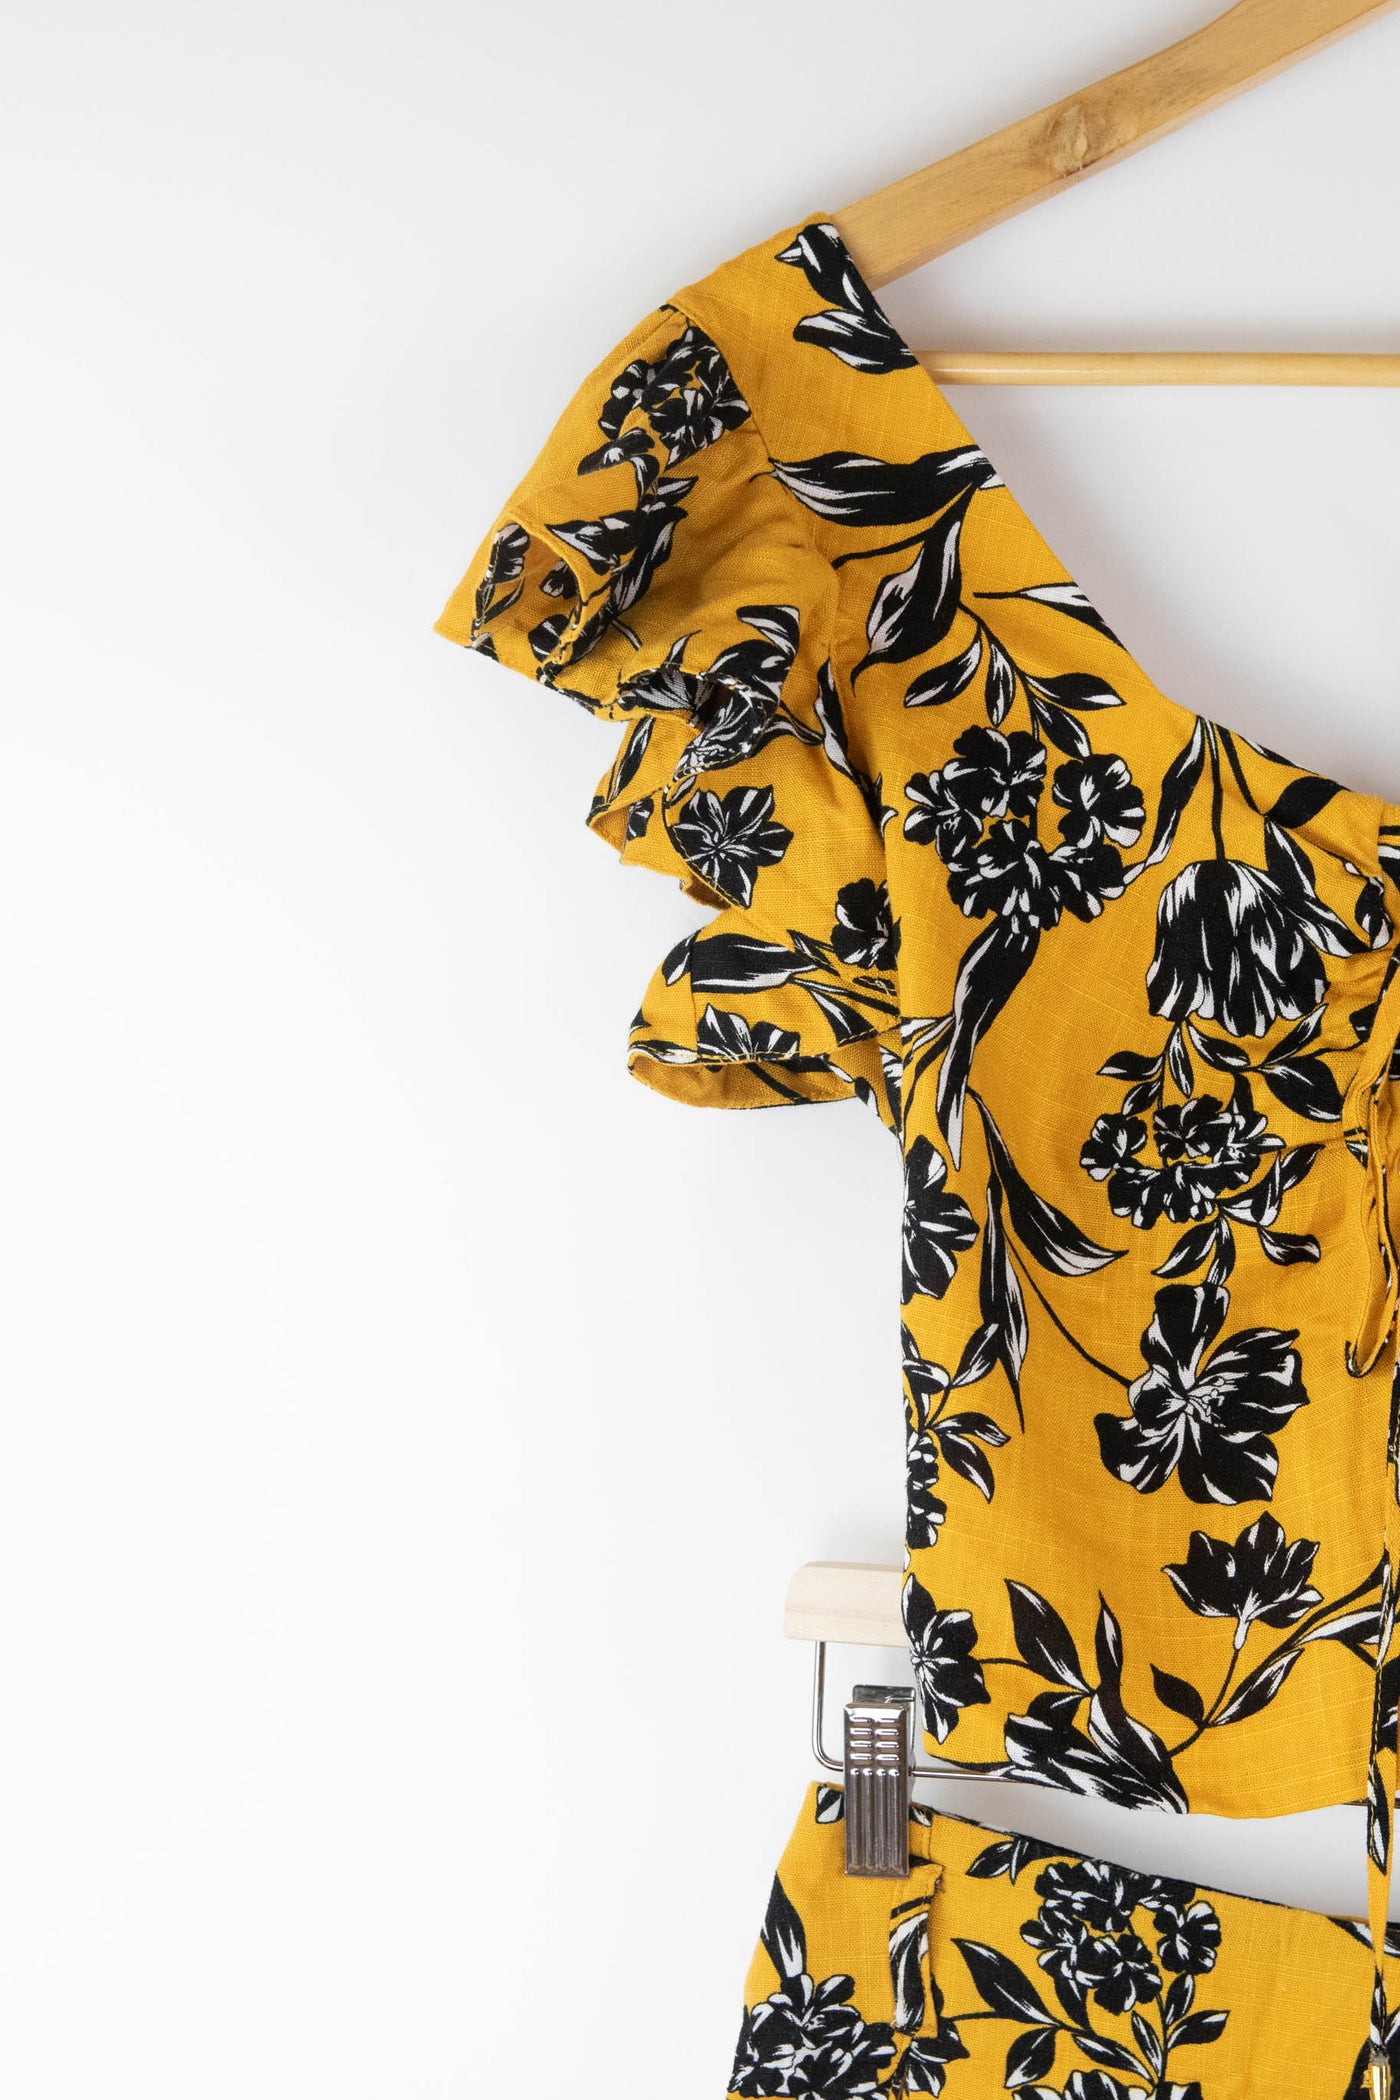 Conjunto blusa y pantalón corto amarillo con estampado floral